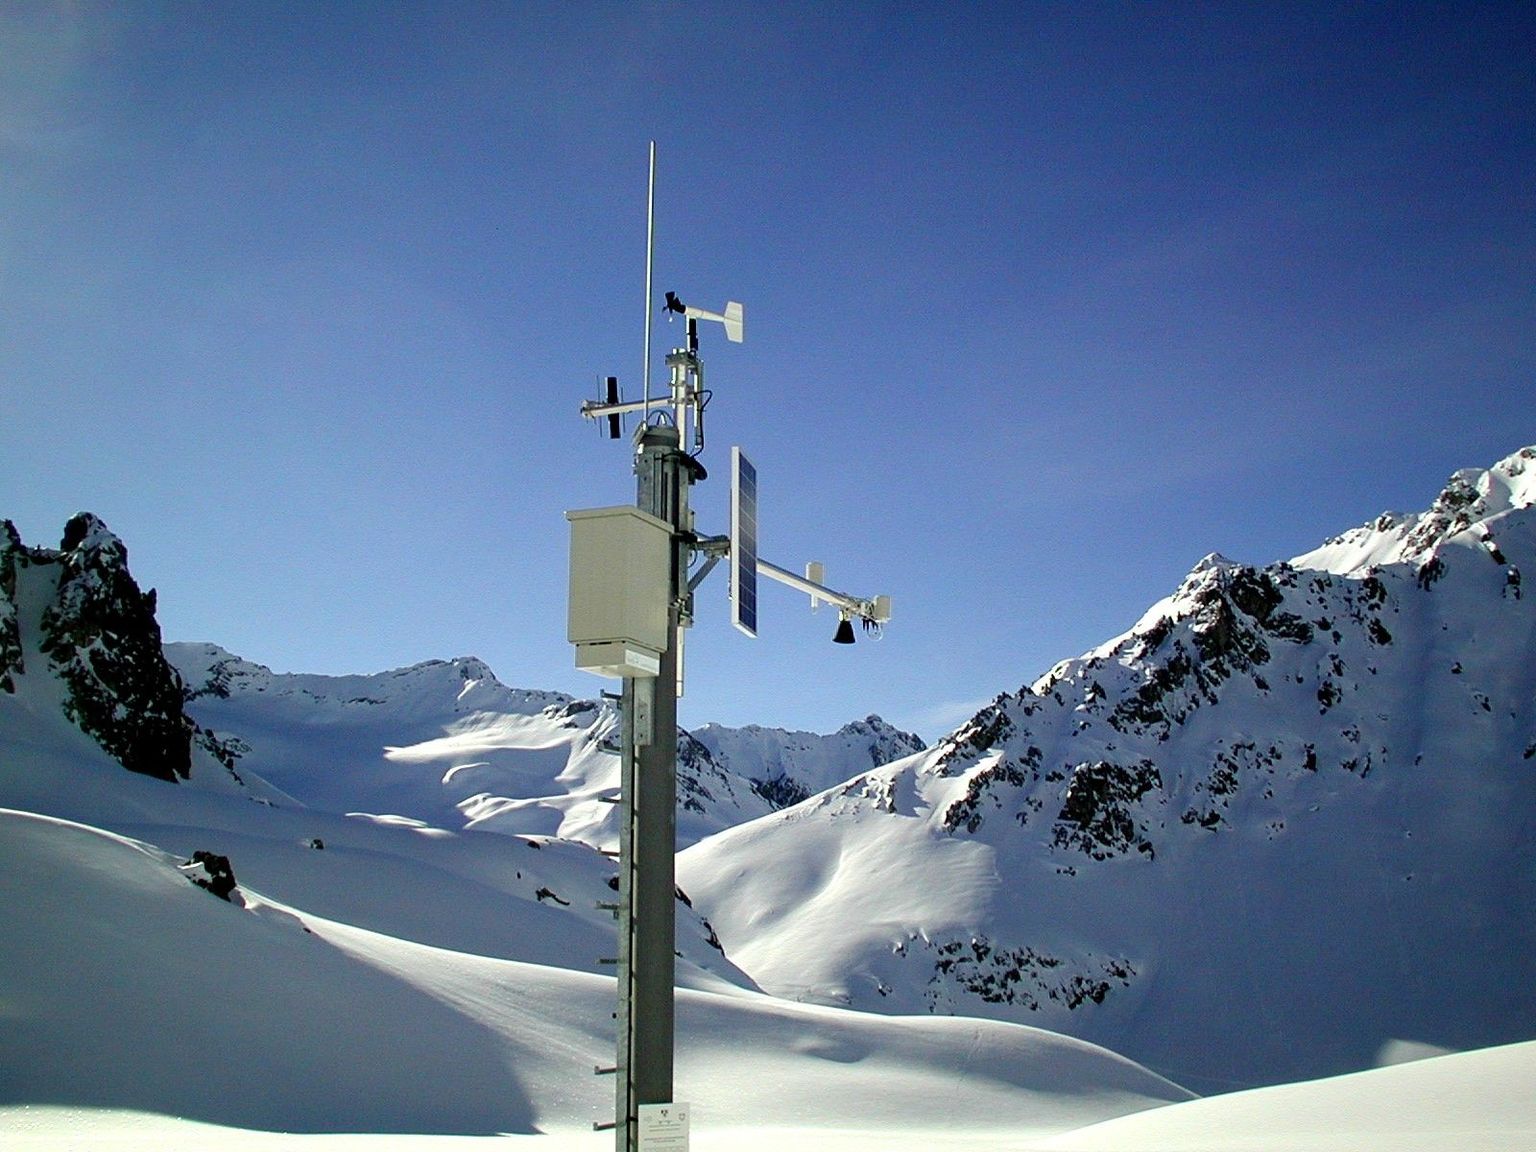 Station IMIS Bärentäli à 2558 m d'altitude avec mesure automatique de la hauteur de neigeStation IMIS Bärentäli à 2558 m d'altitude avec mesure automatique de la hauteur de neige